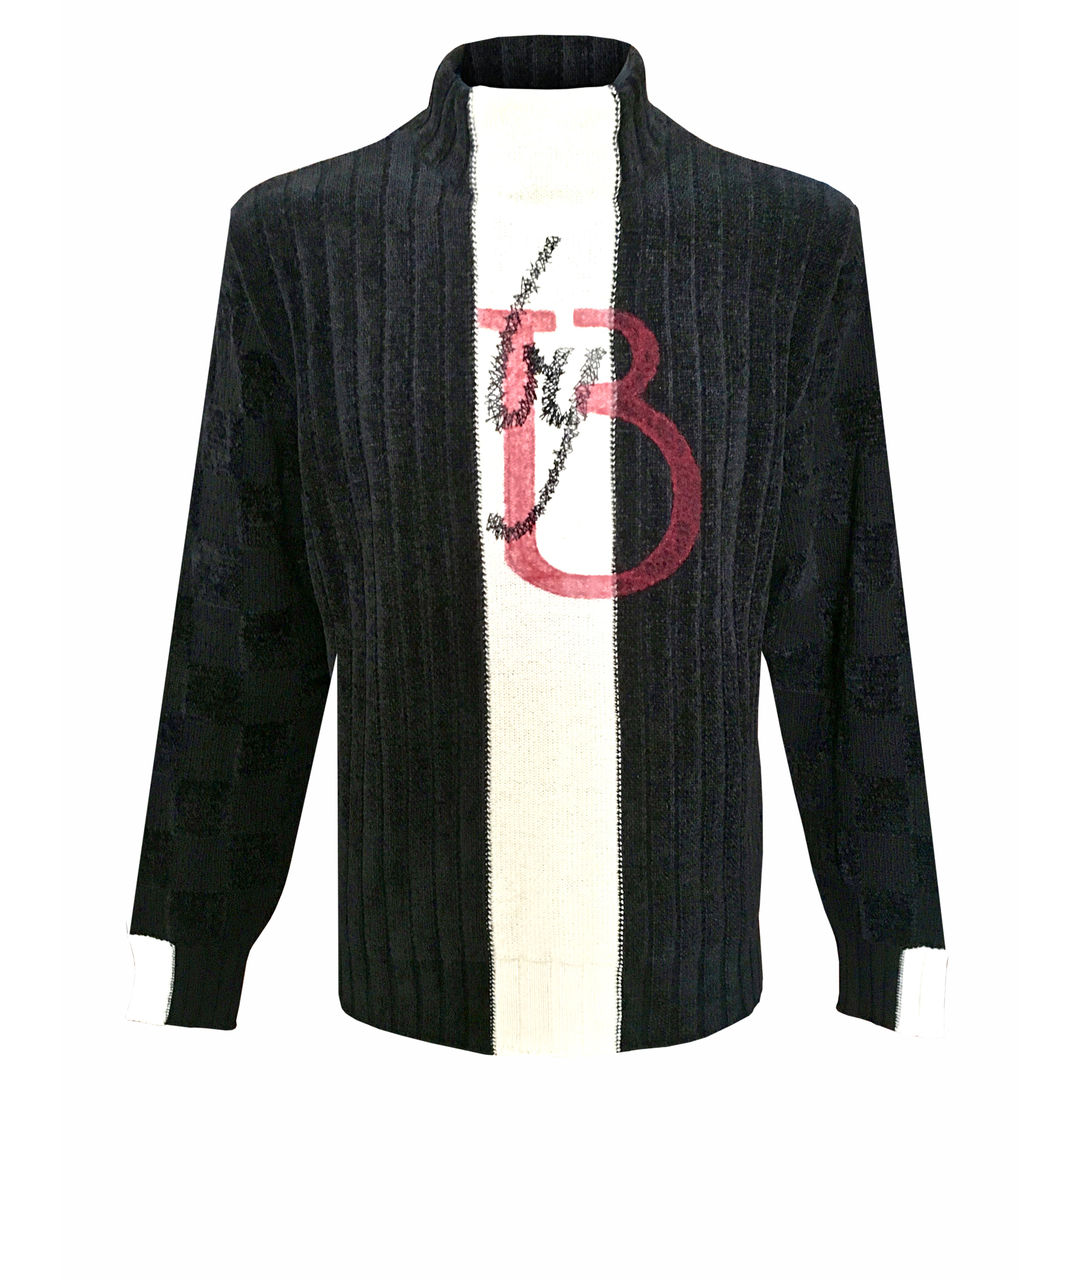 BILANCIONI Черный шерстяной джемпер / свитер, фото 1